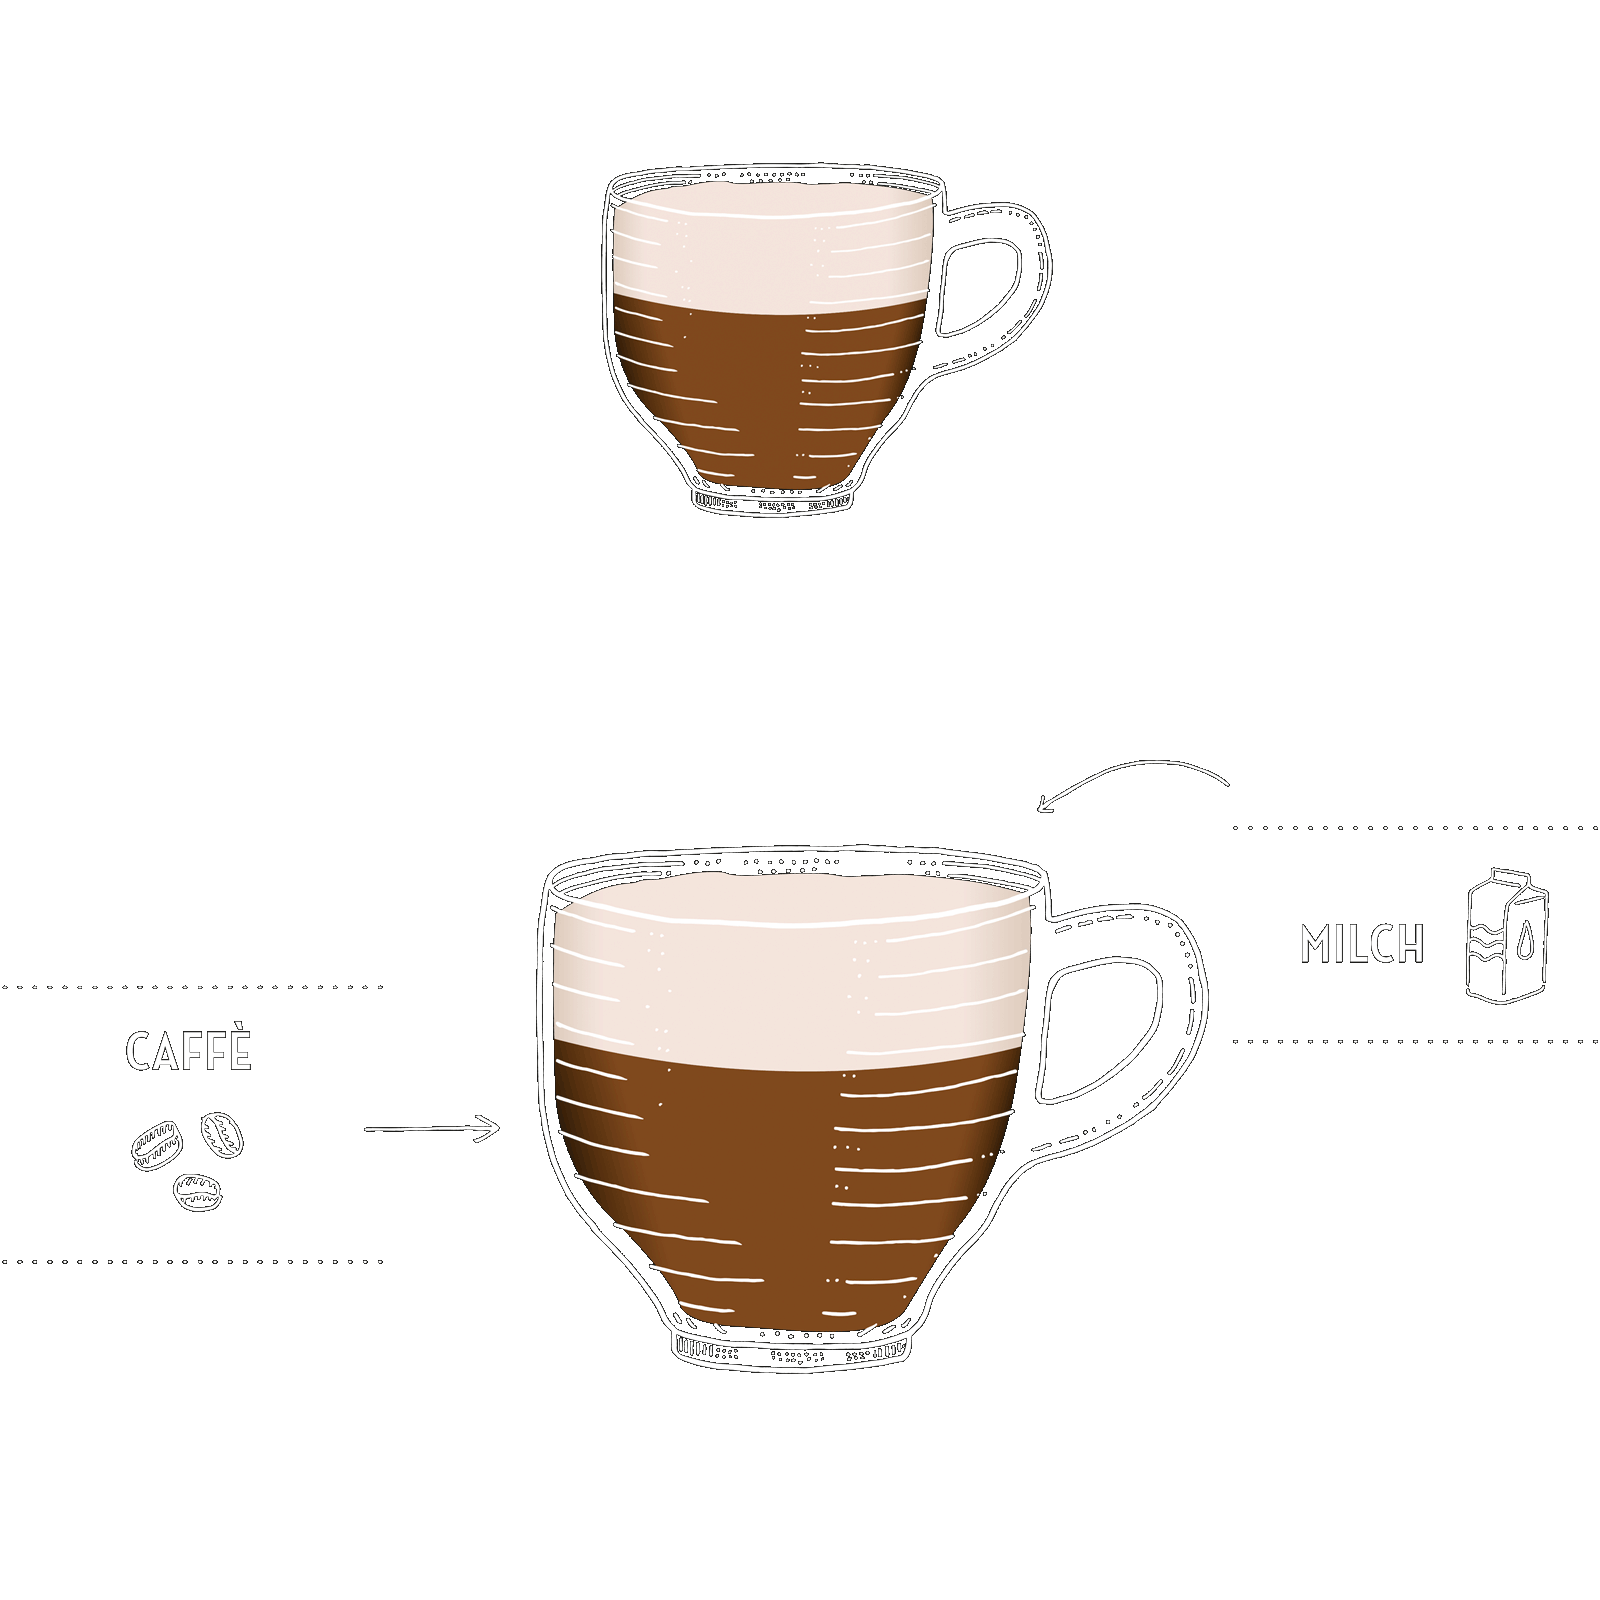 caffe-latte.png